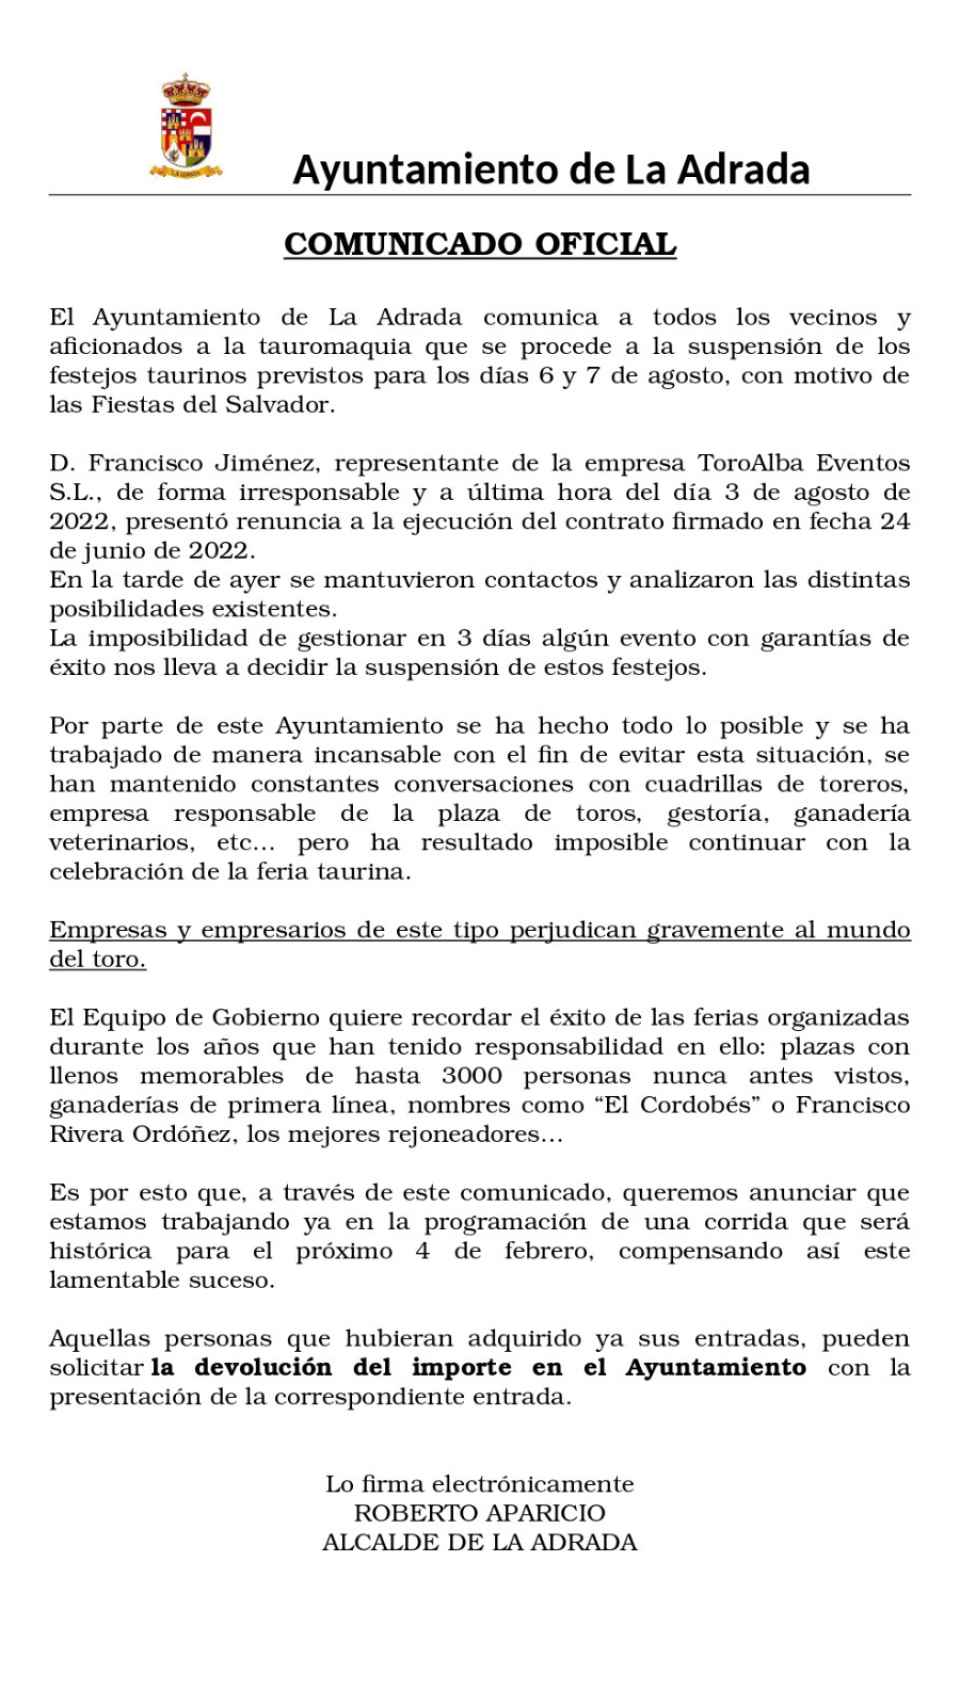 Comunicado del Ayuntamiento de La Adrada con respecto a los festejos taurinos